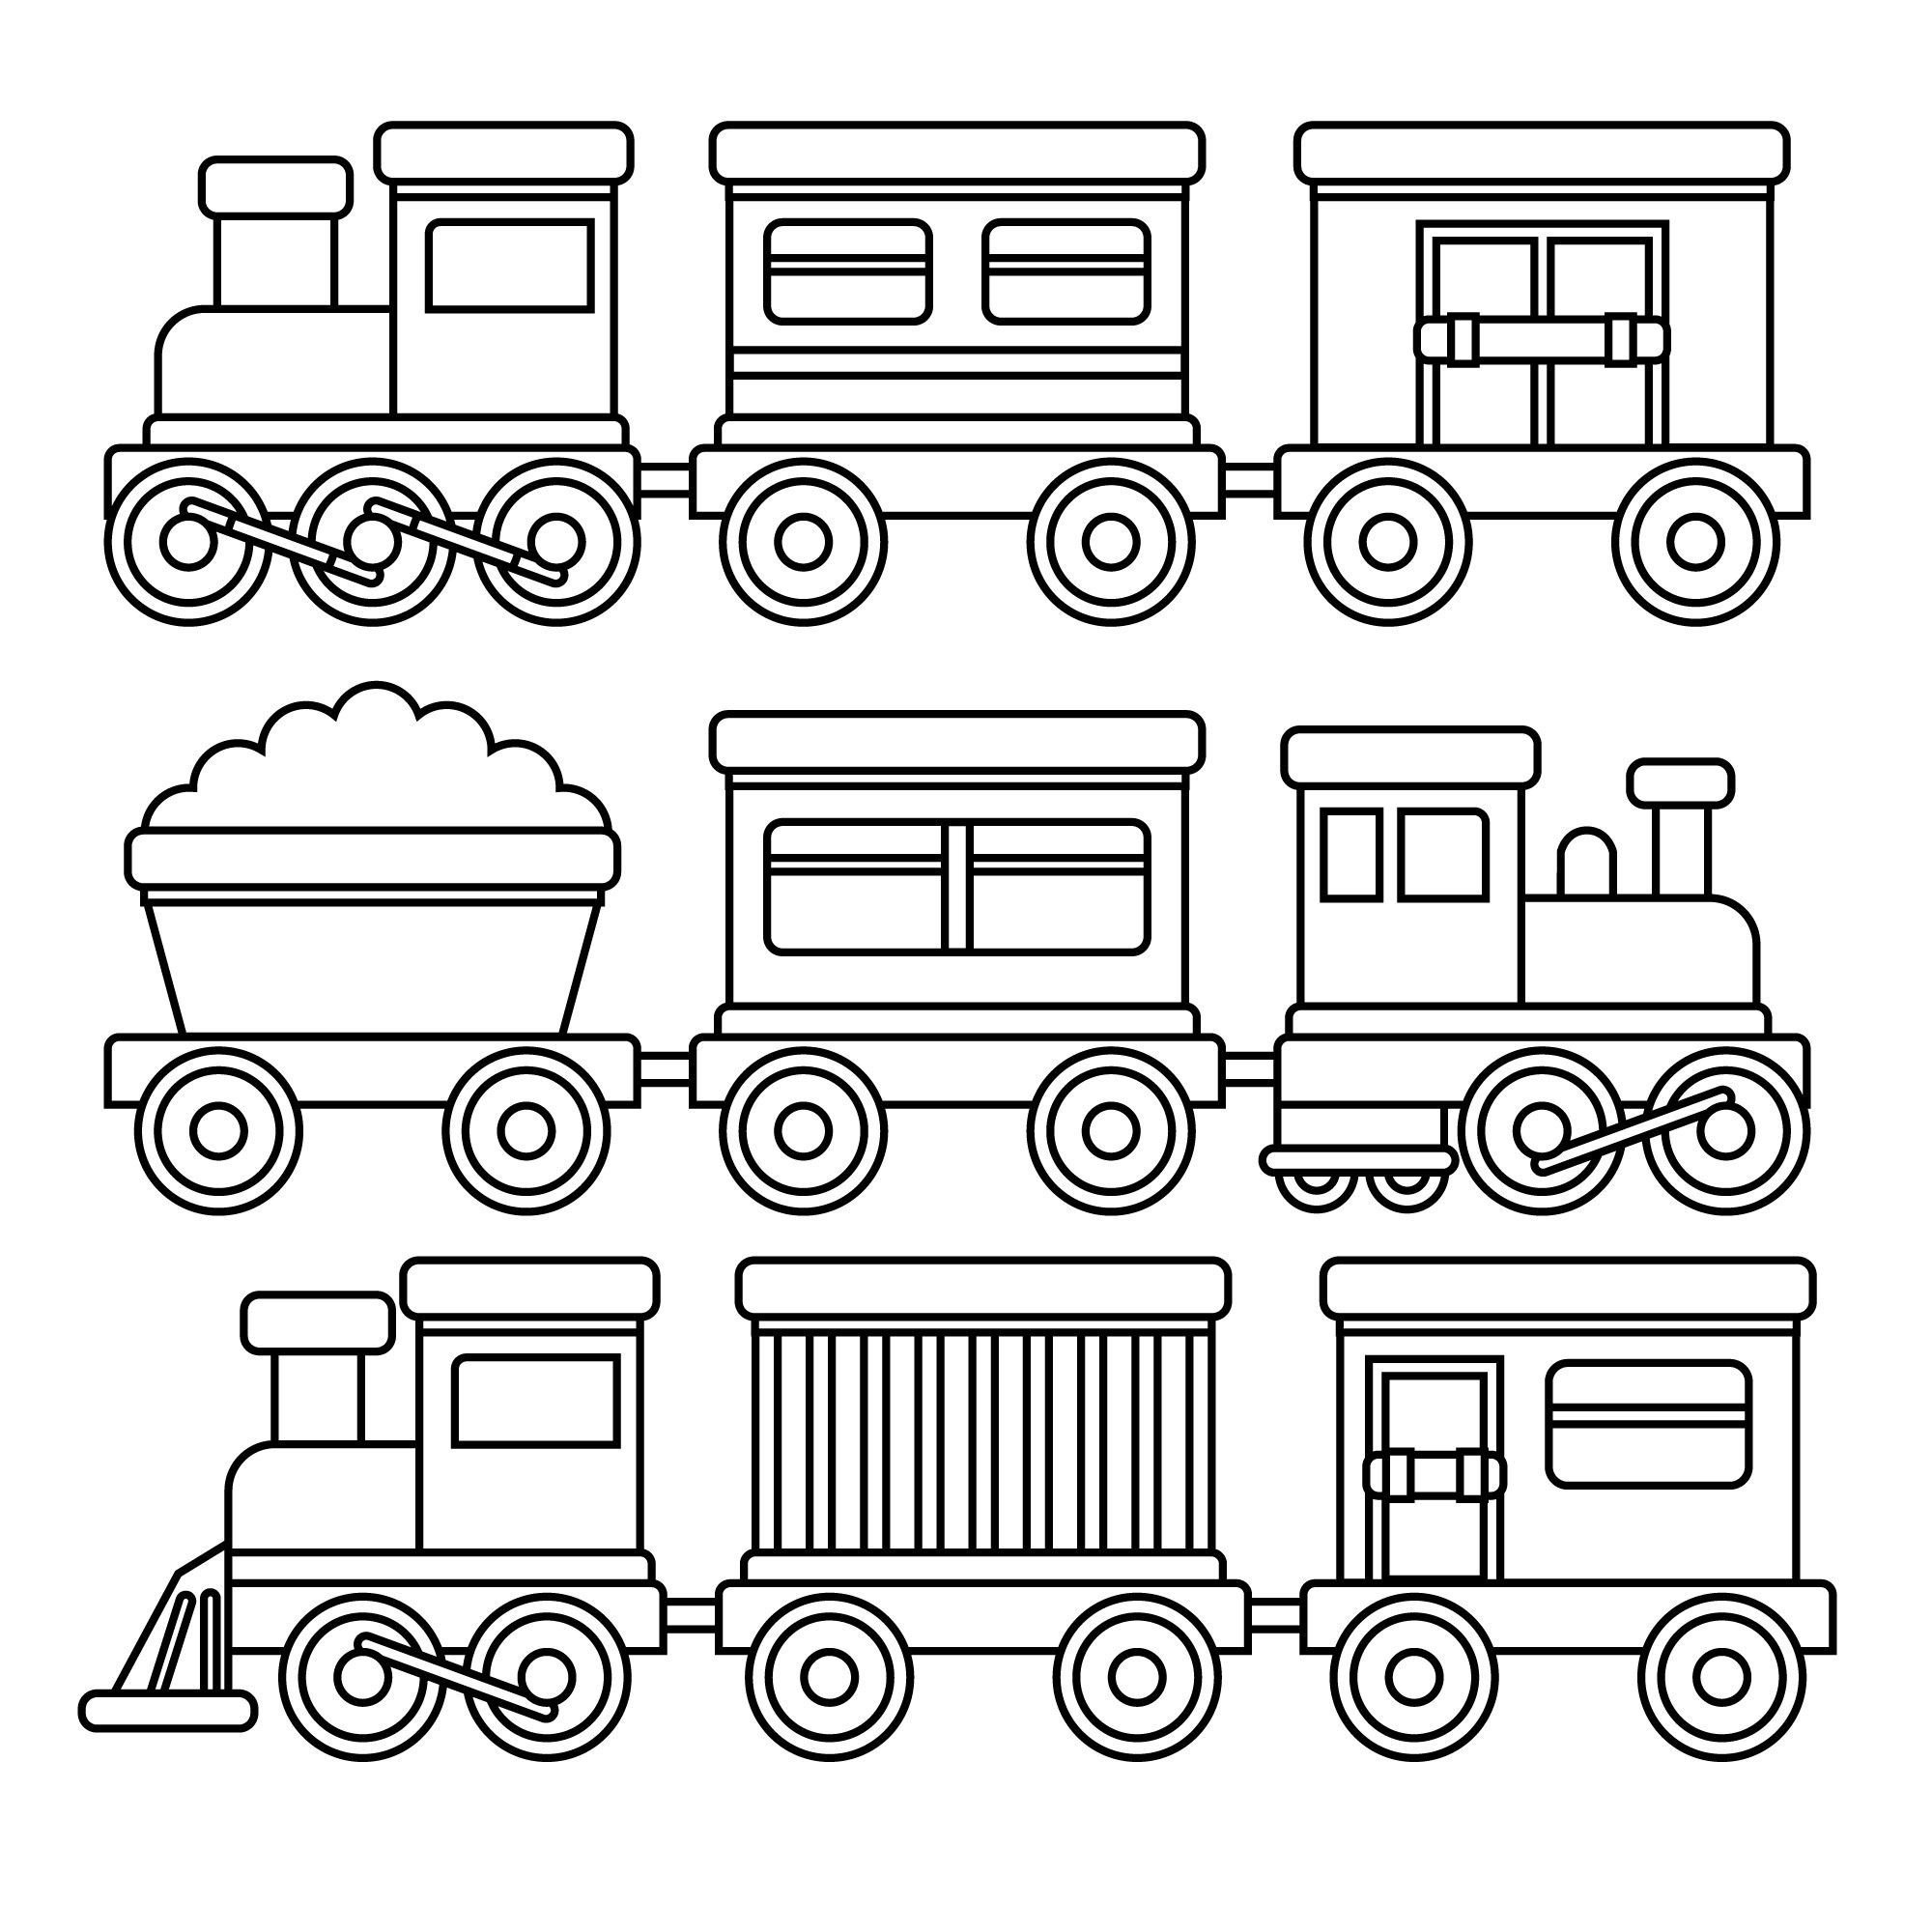 Раскраска для детей: набор игрушечных поездов с вагонами